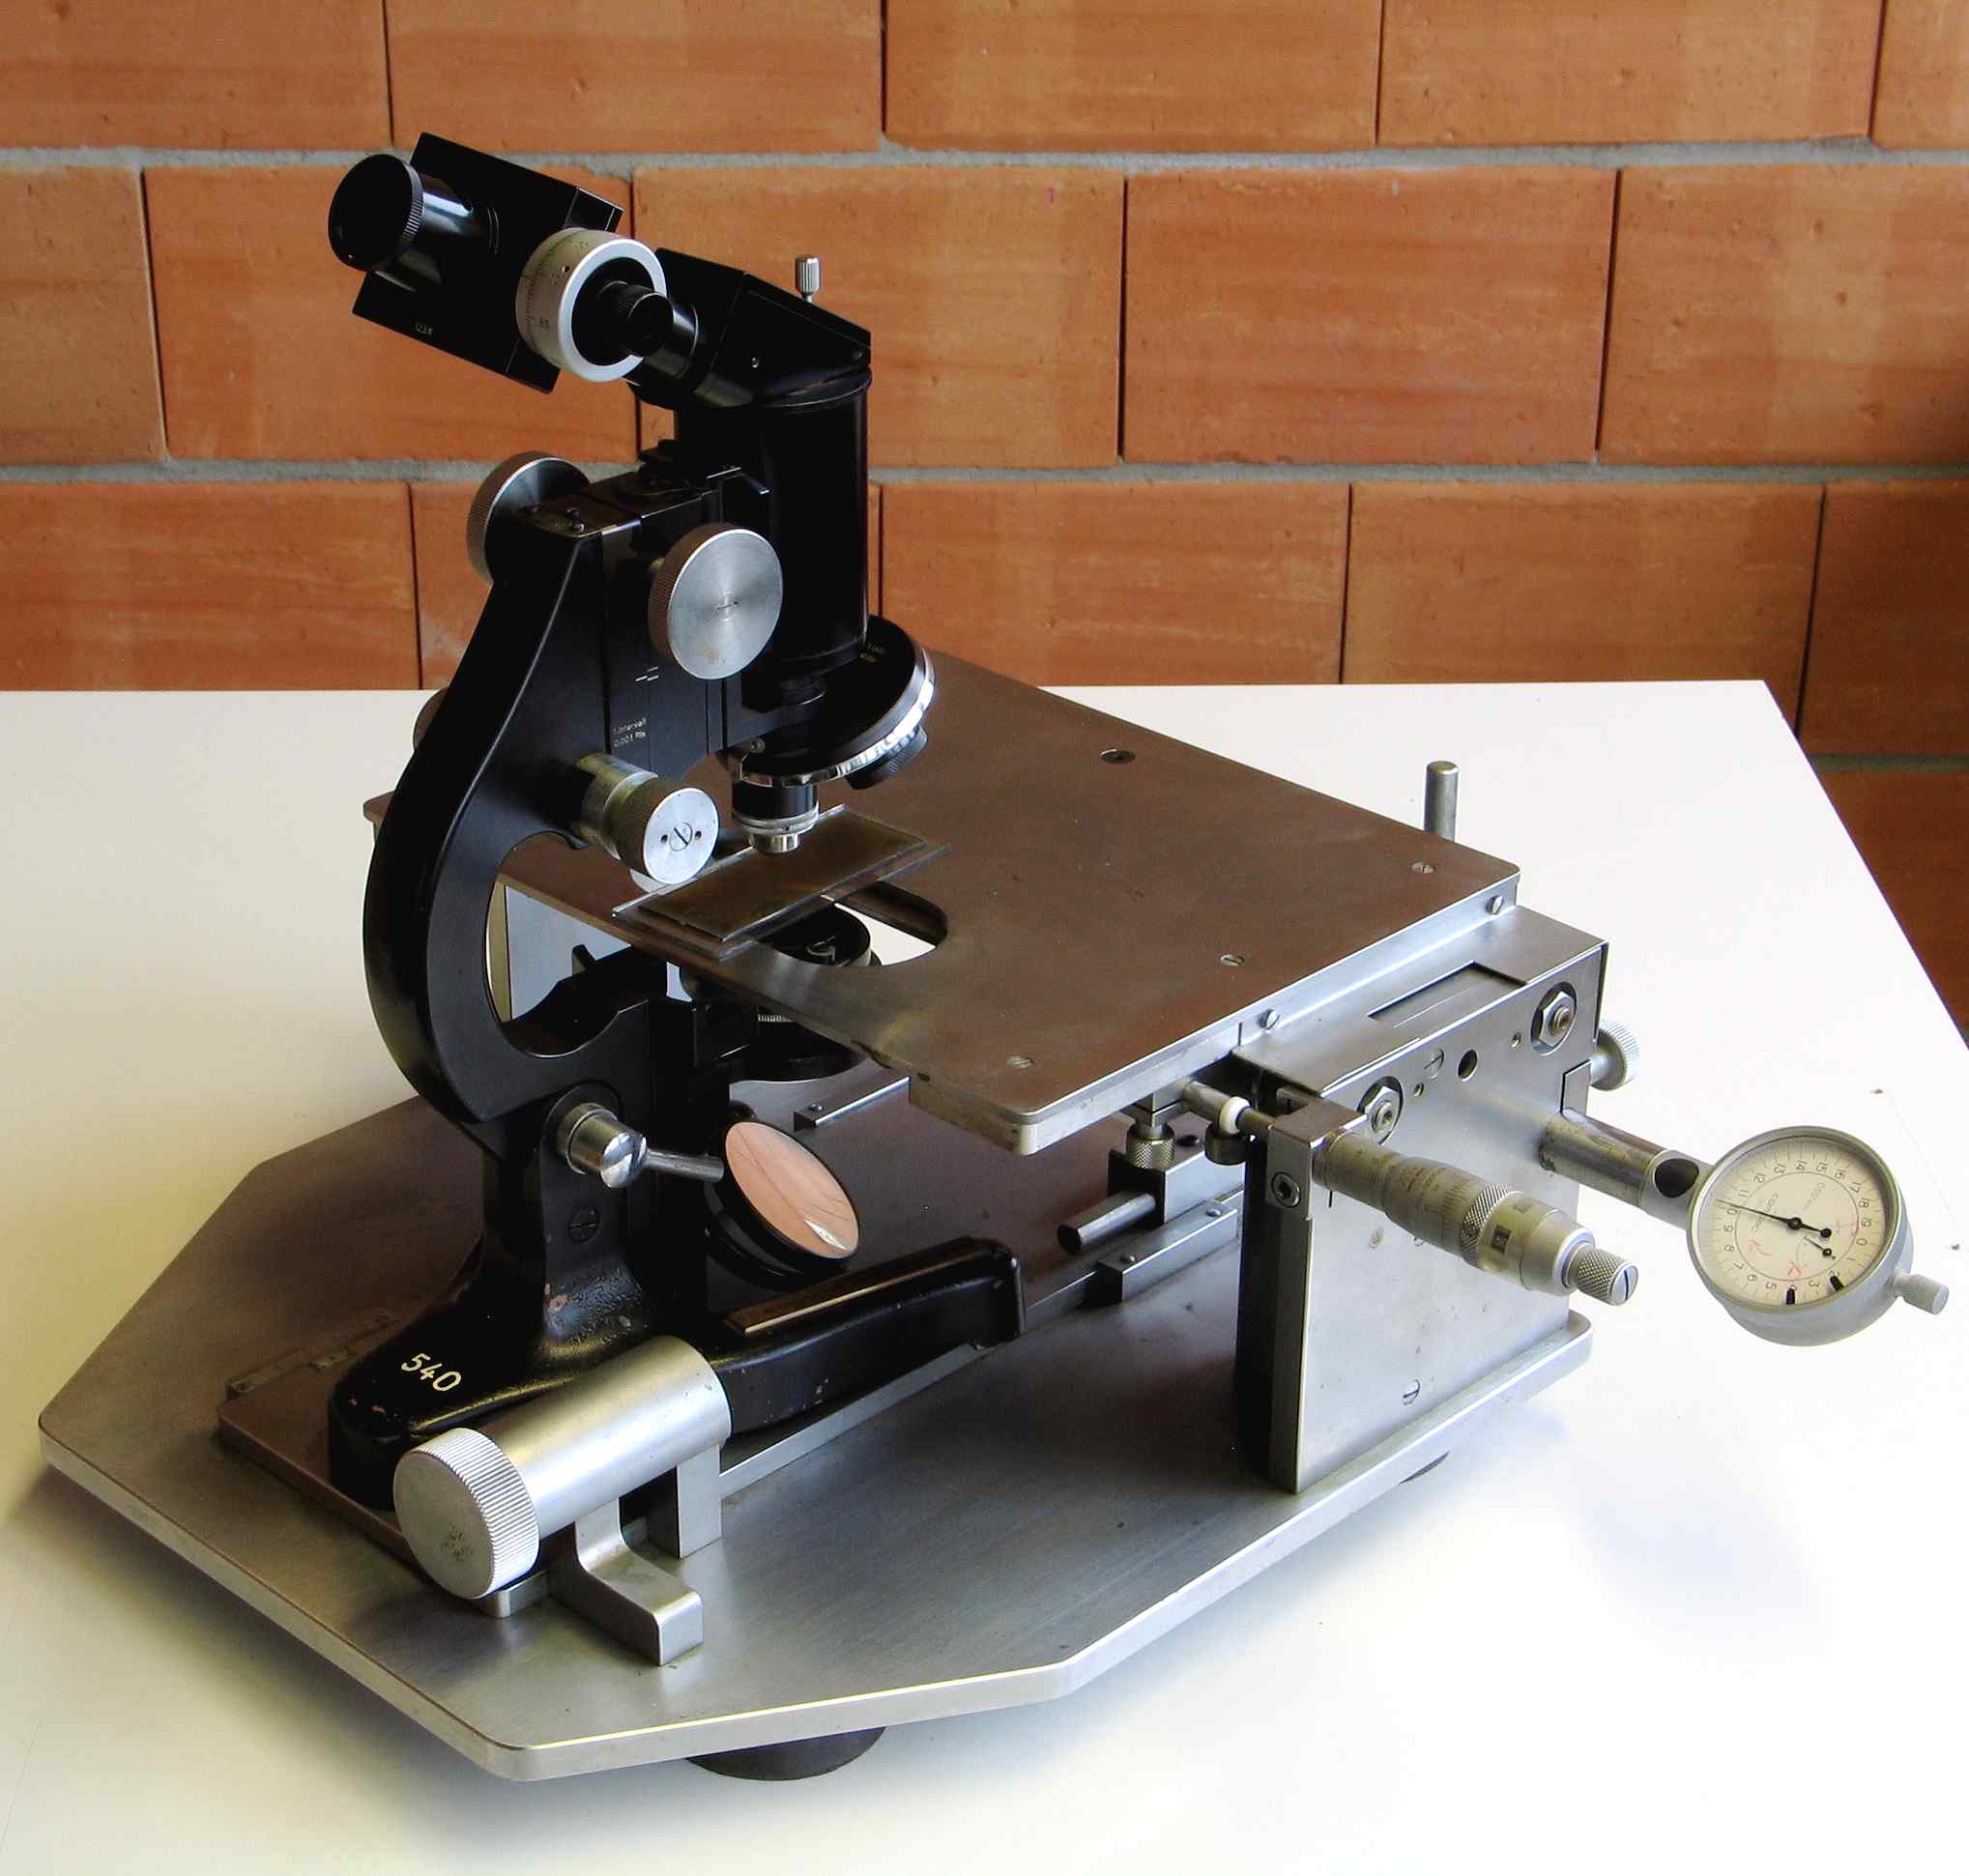 Microscope composé
(avec table à déplacement x–y micrométrique)